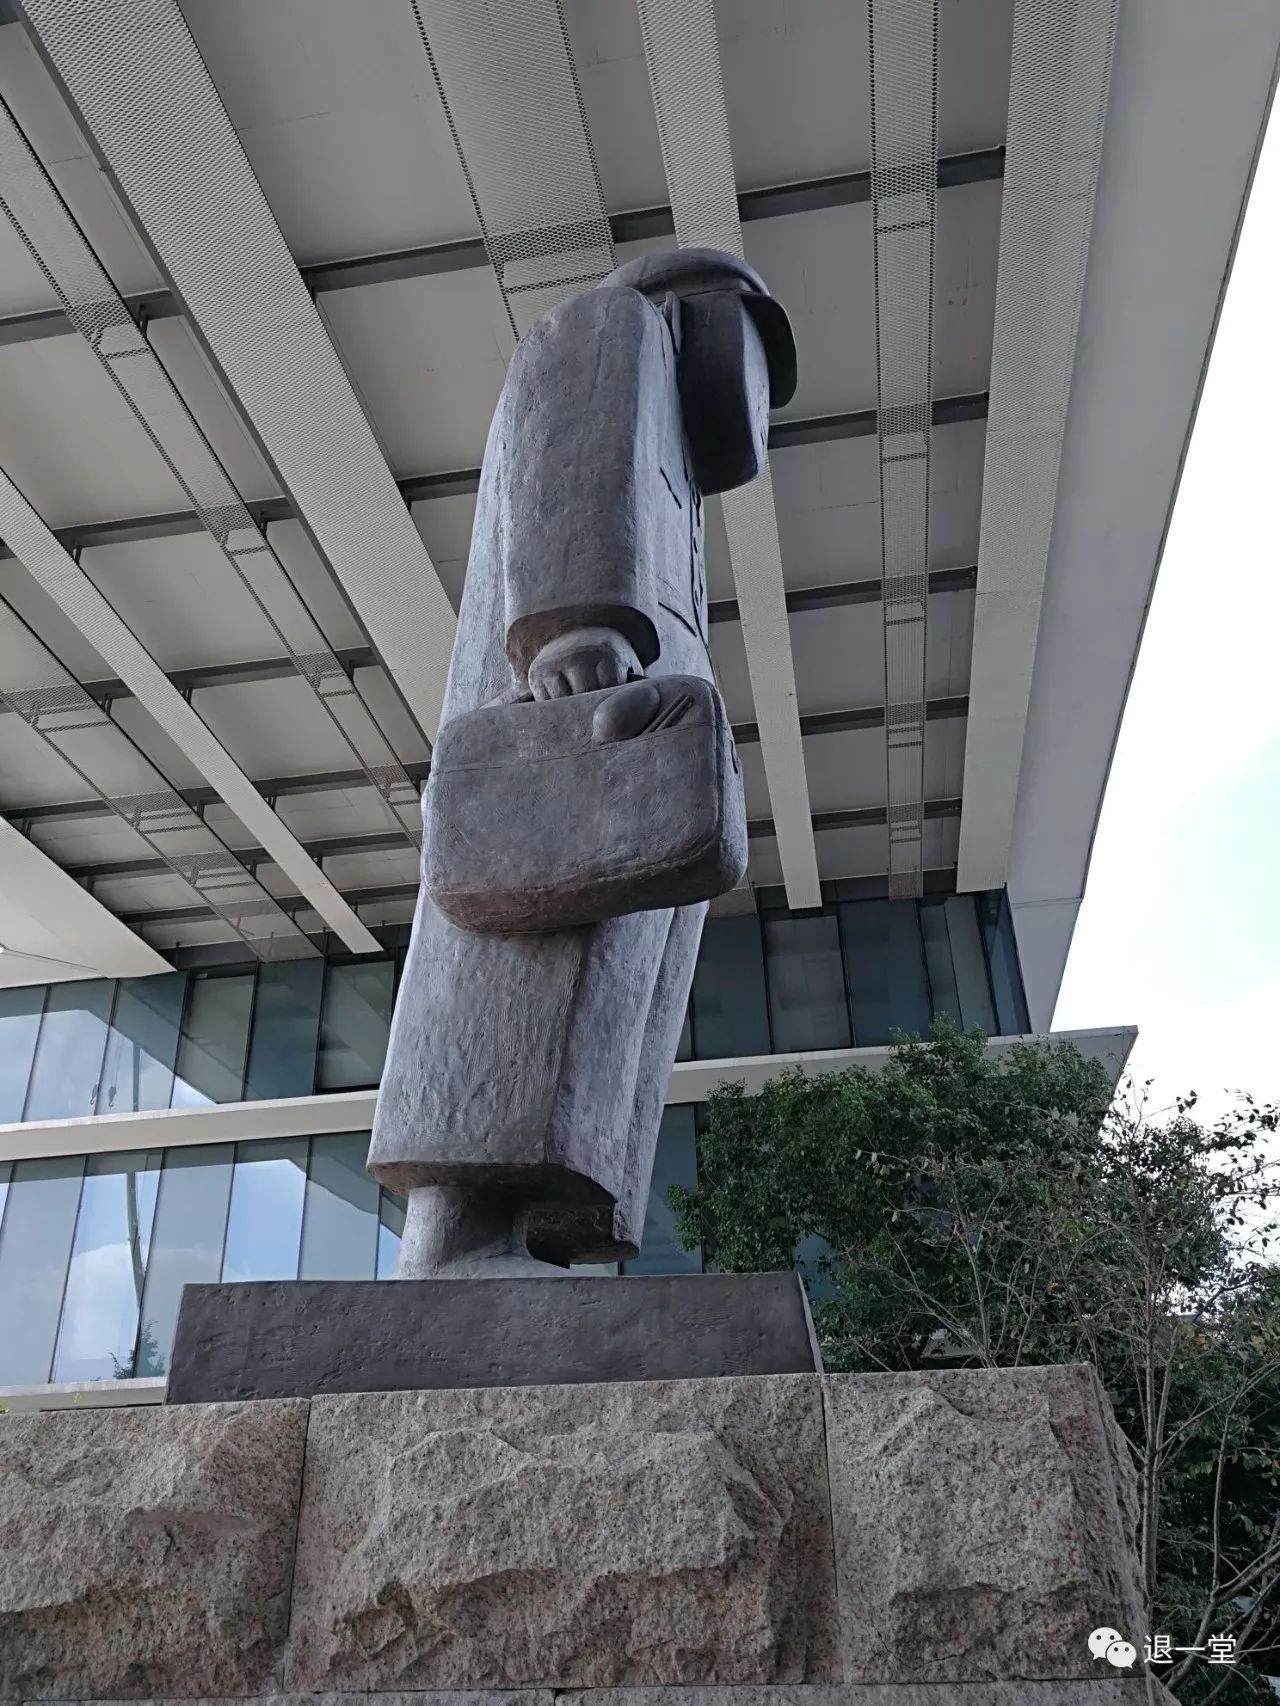 阿里巴巴集团总部的雕塑独具一格,很有内涵,是曾经的那个时代的一个